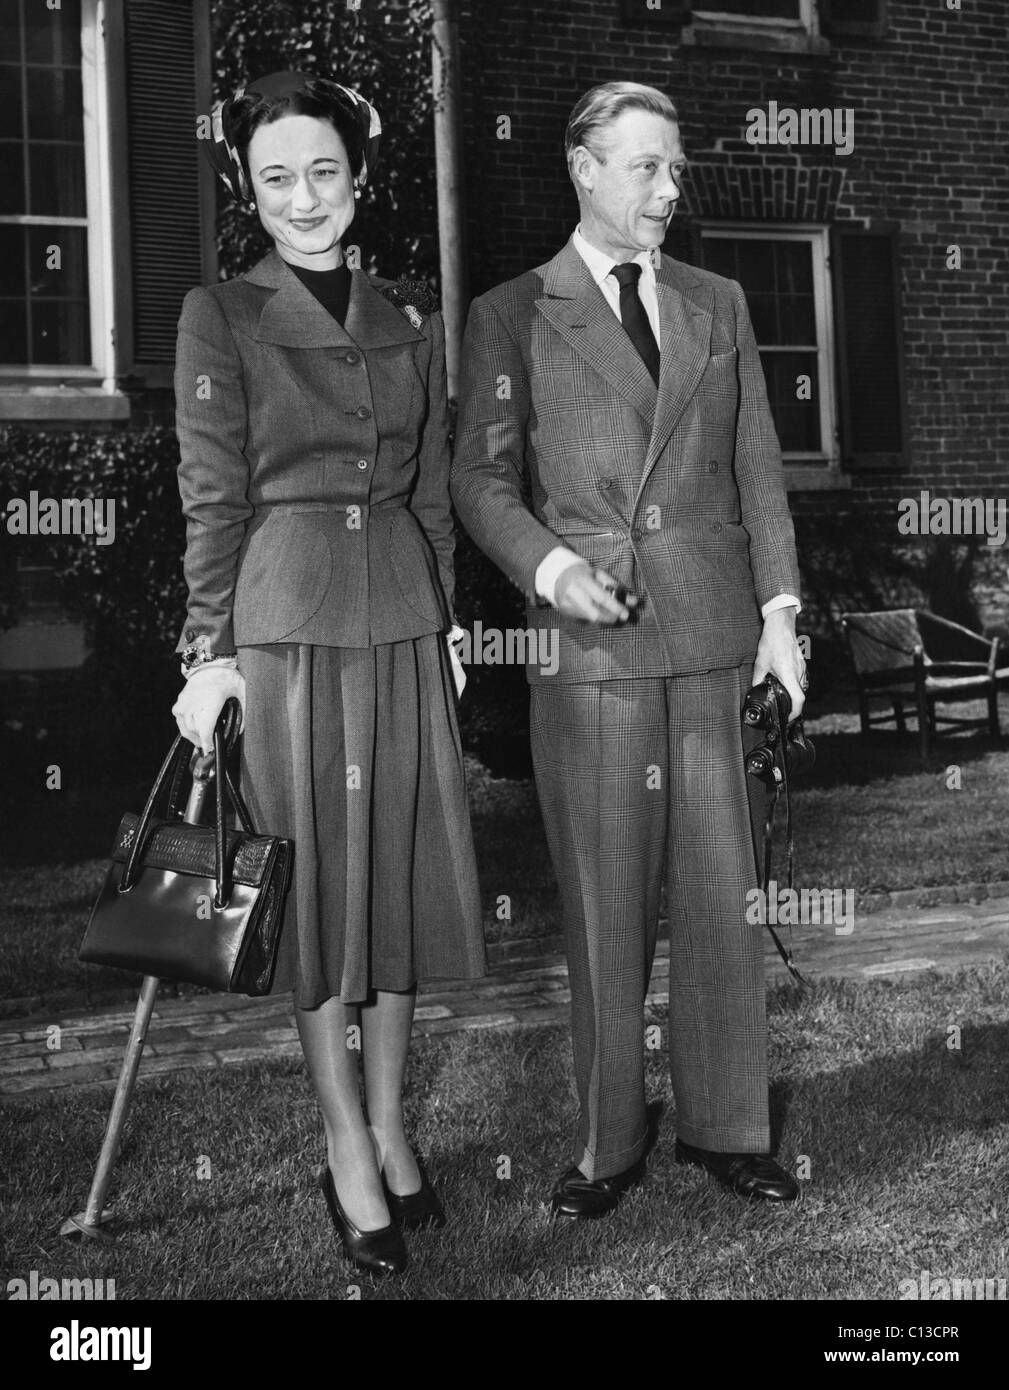 La Duchesse de Windsor, Wallis Simpson et le Prince Edward, duc de Windsor vers le milieu des années 1940. Banque D'Images